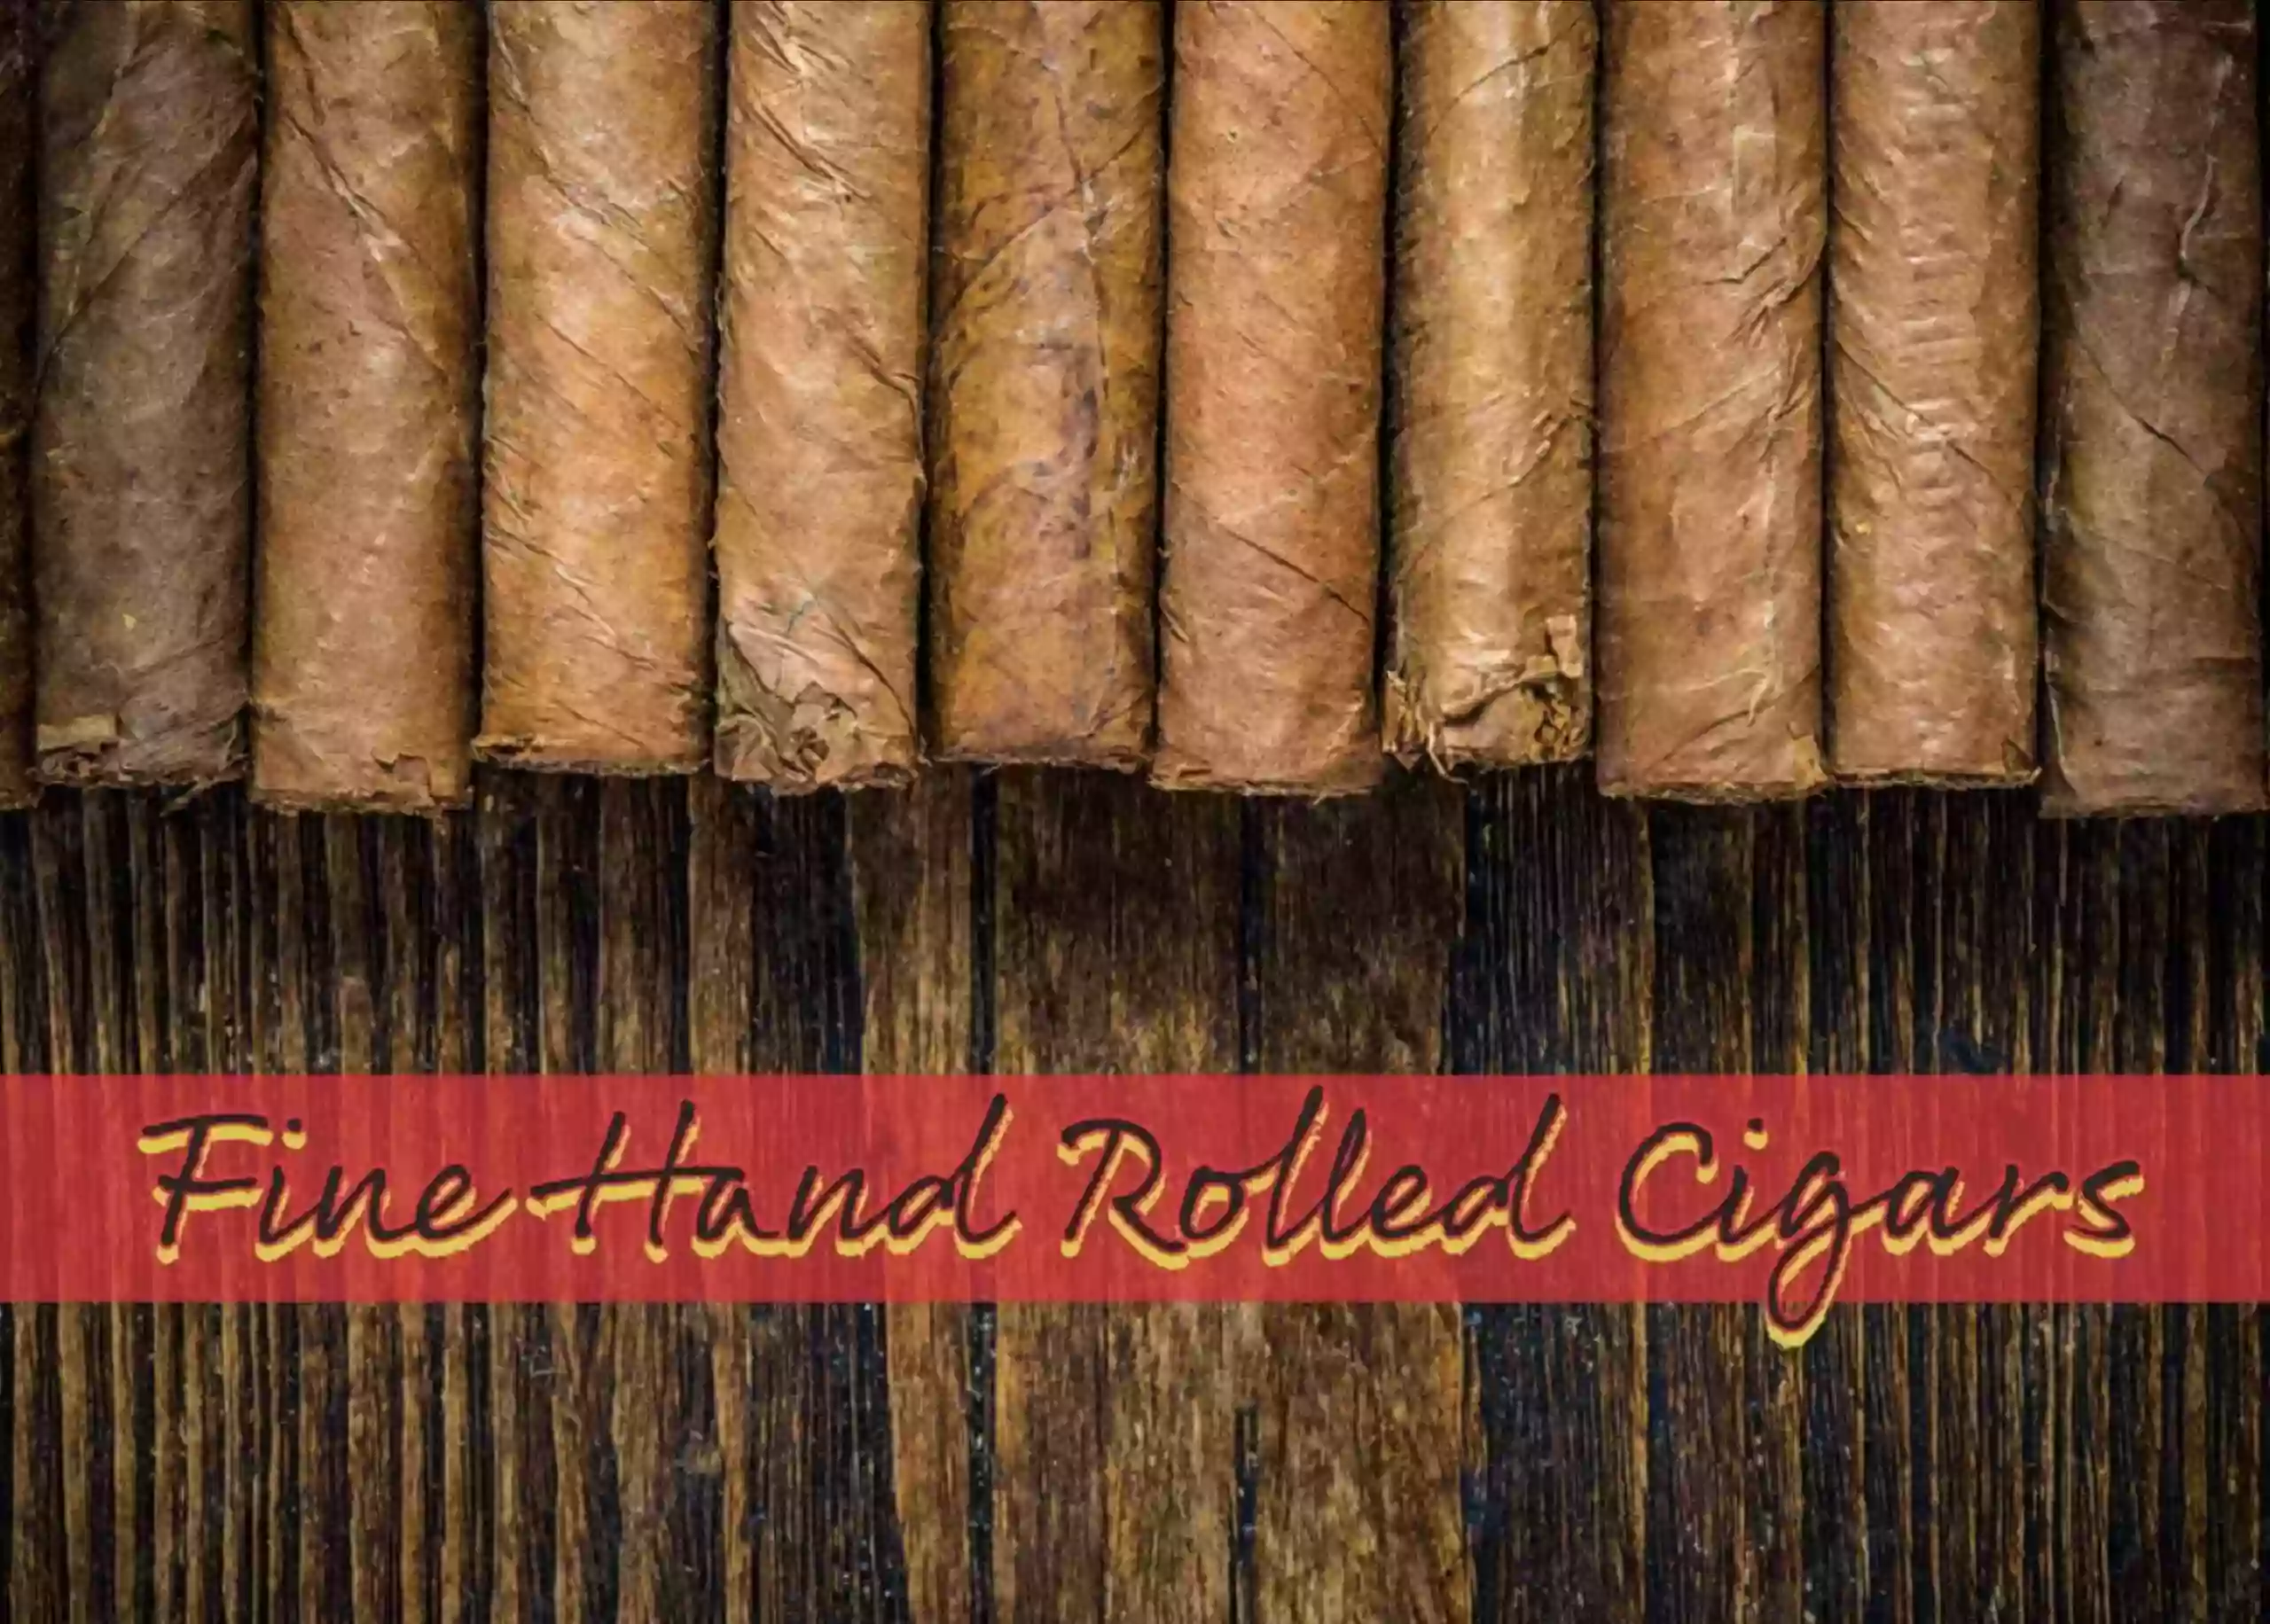 Culy Cigars